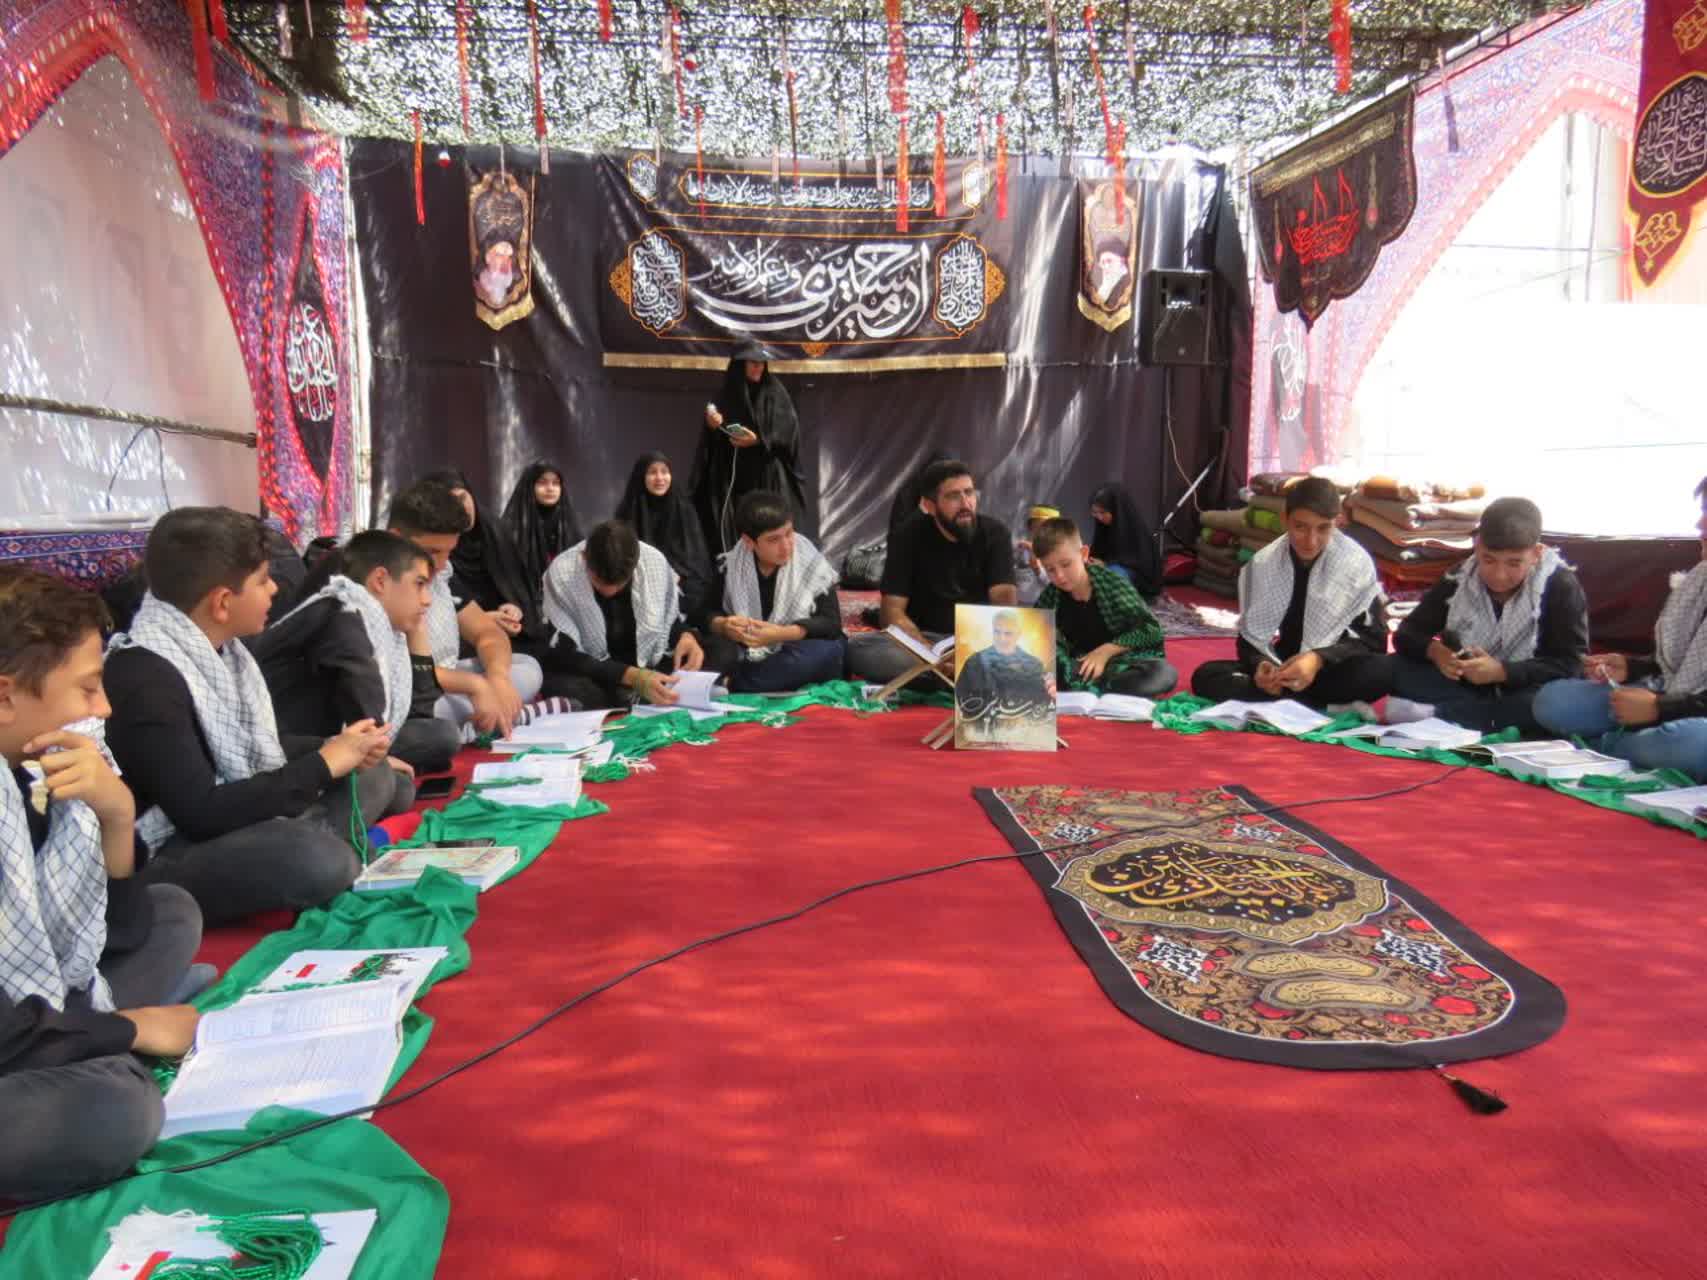 بچه هاي مسجد در مرز تمرچين، محفل انس با قرآن کريم برگزار مي کنند